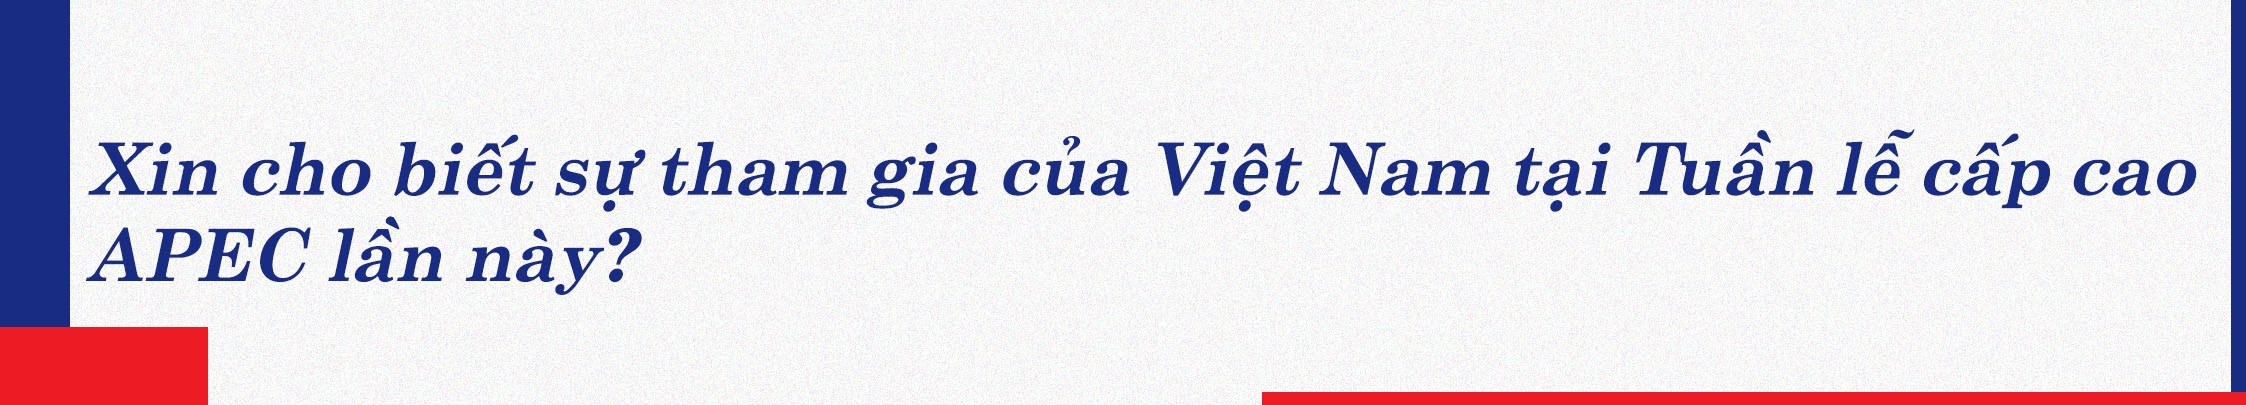 Chuyến thăm tạo động lực phát triển Việt Nam-Thái Lan